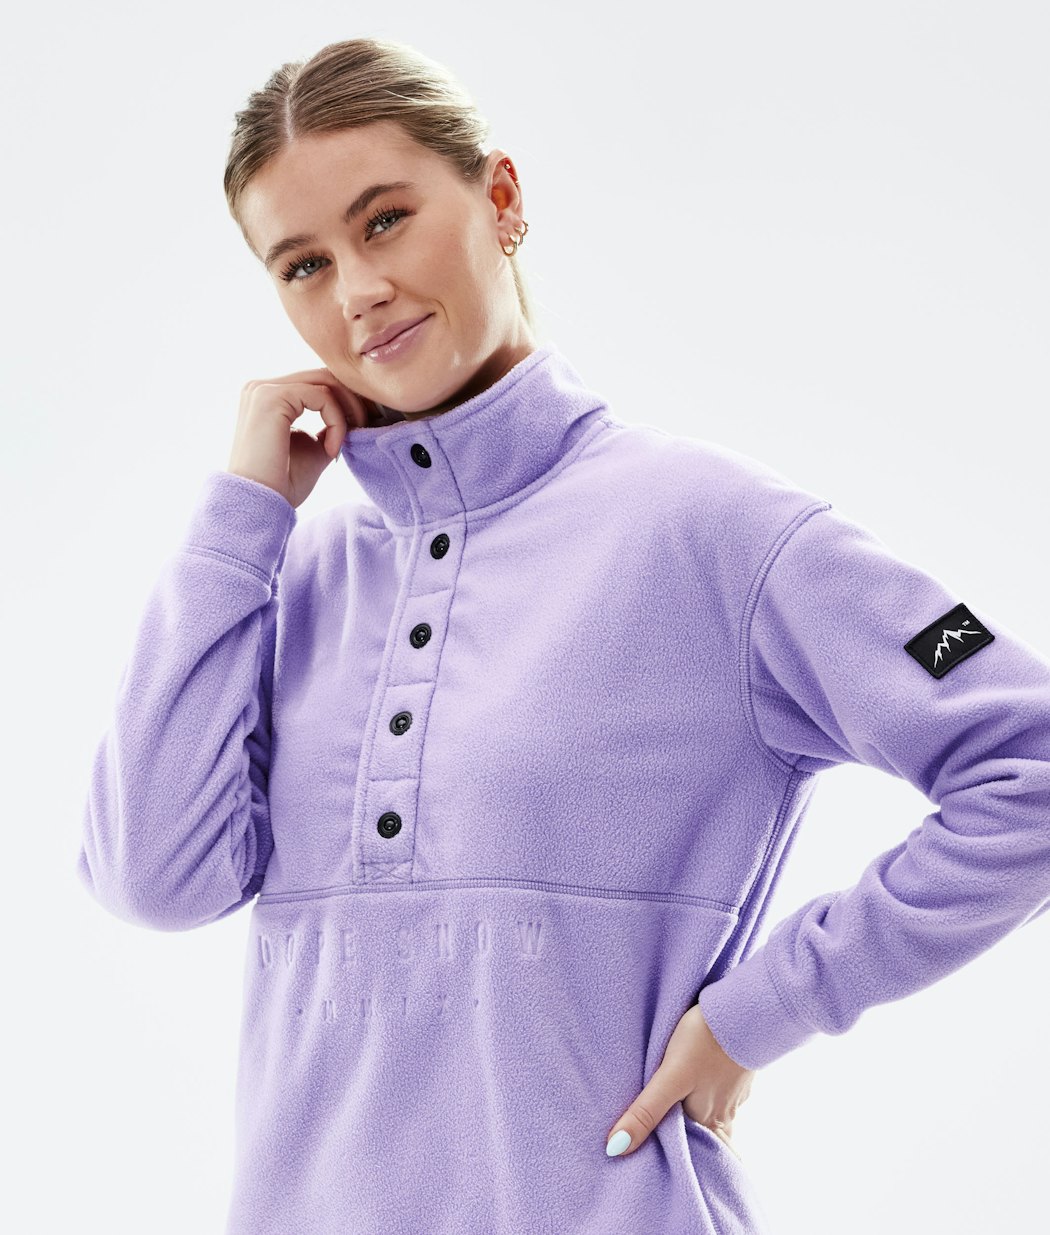 Comfy W 2021 Fleece Sweater Women Faded Violet